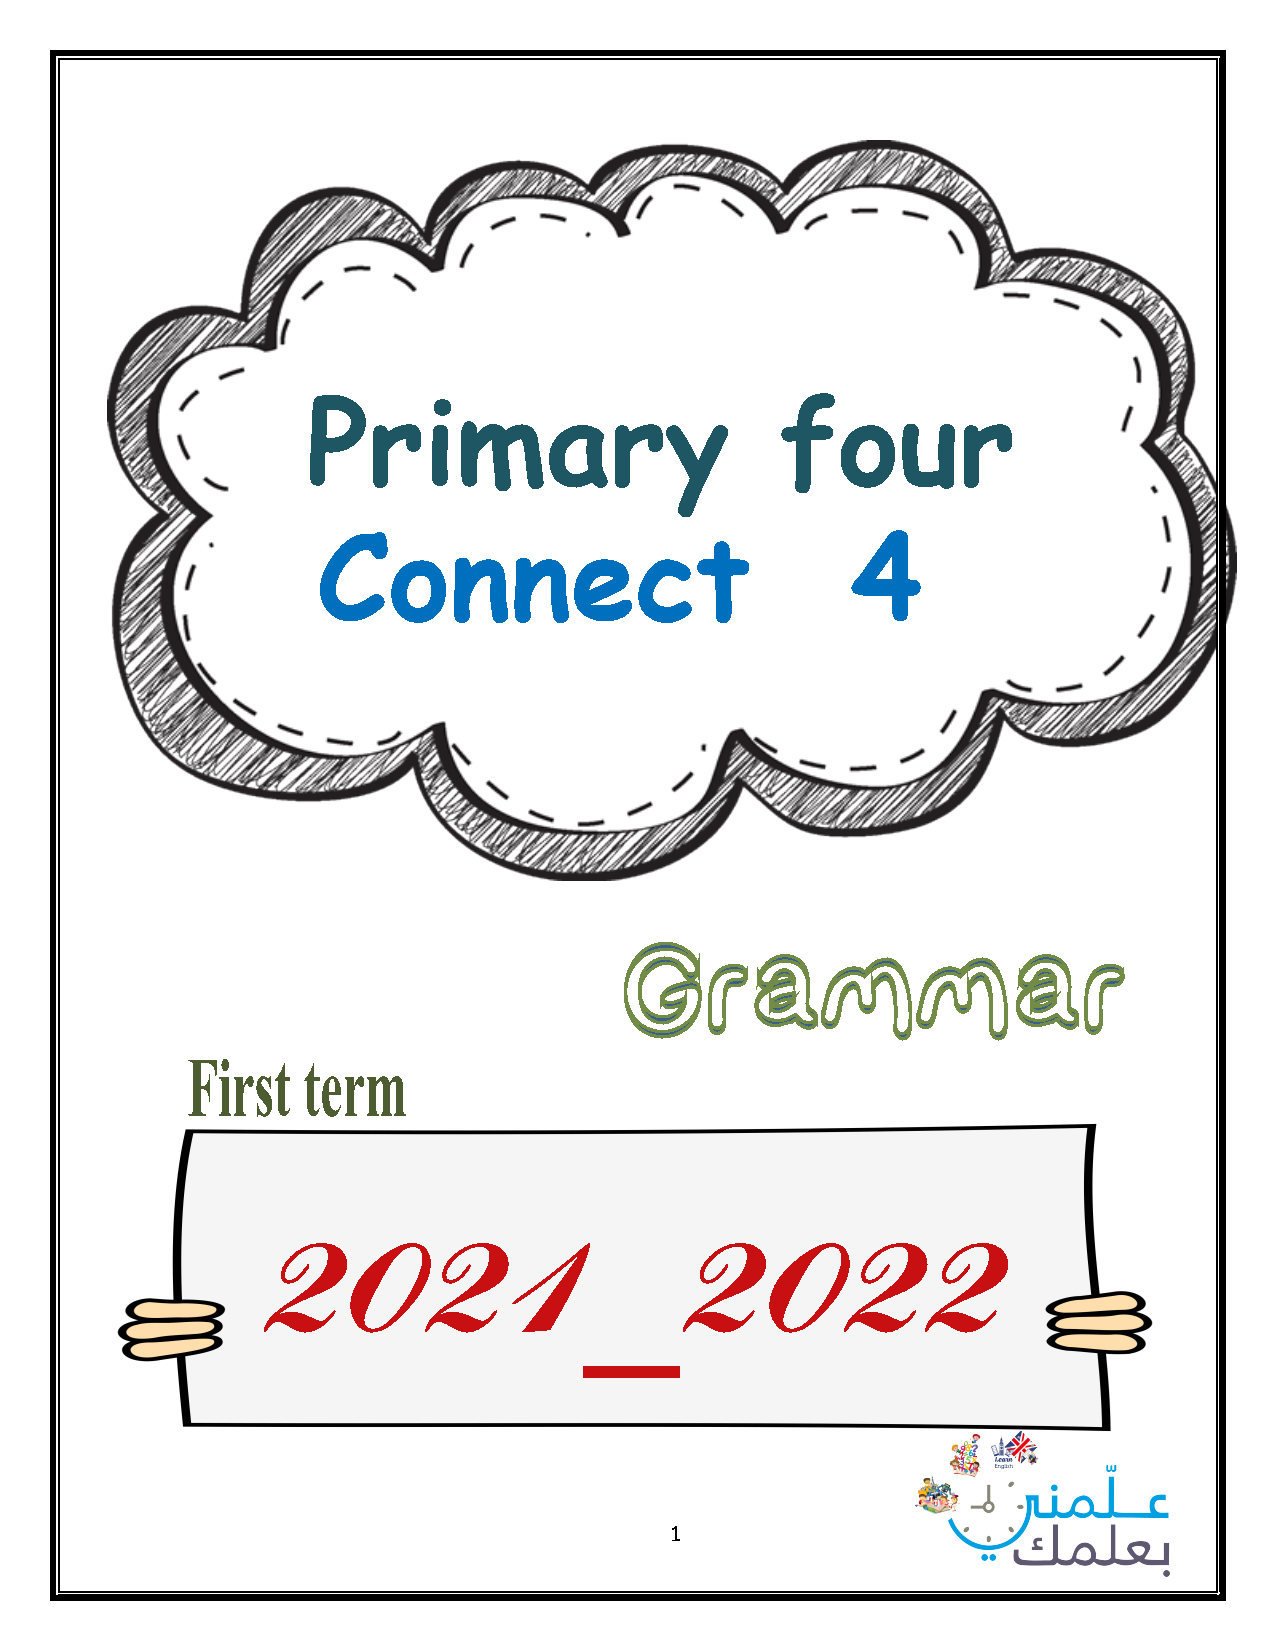 بوكلت جرامر منهج connect plus للصف الرابع الابتدائي ترم اول 2022	 | جروب ابتدائى هنذاكر وهننجح | English الصف الرابع الابتدائى الترم الاول | طالب اون لاين